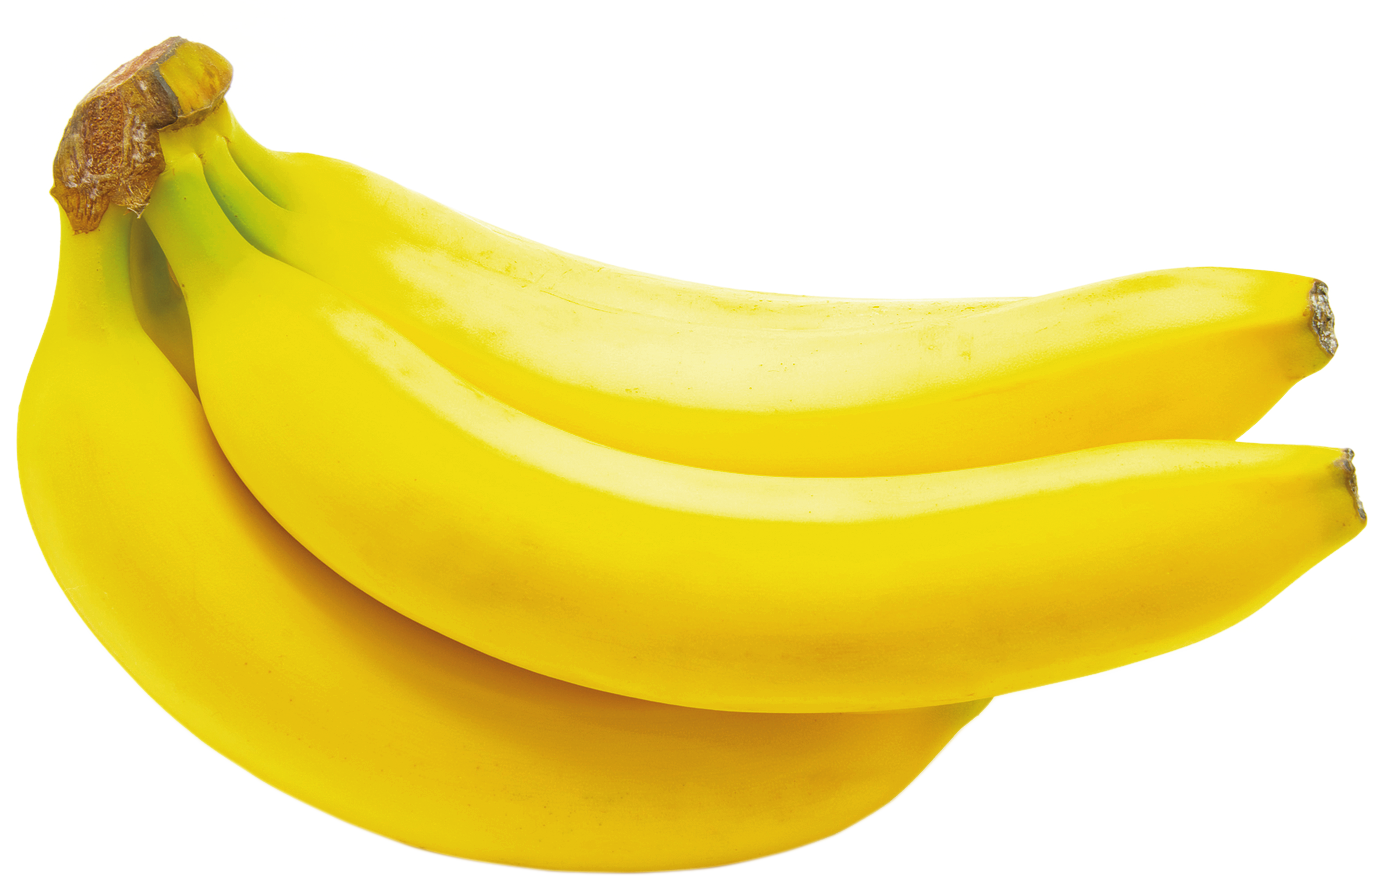 Banana Nutrition Facts & Potassium, Vitamins, Prebiotic & Fiber Contents